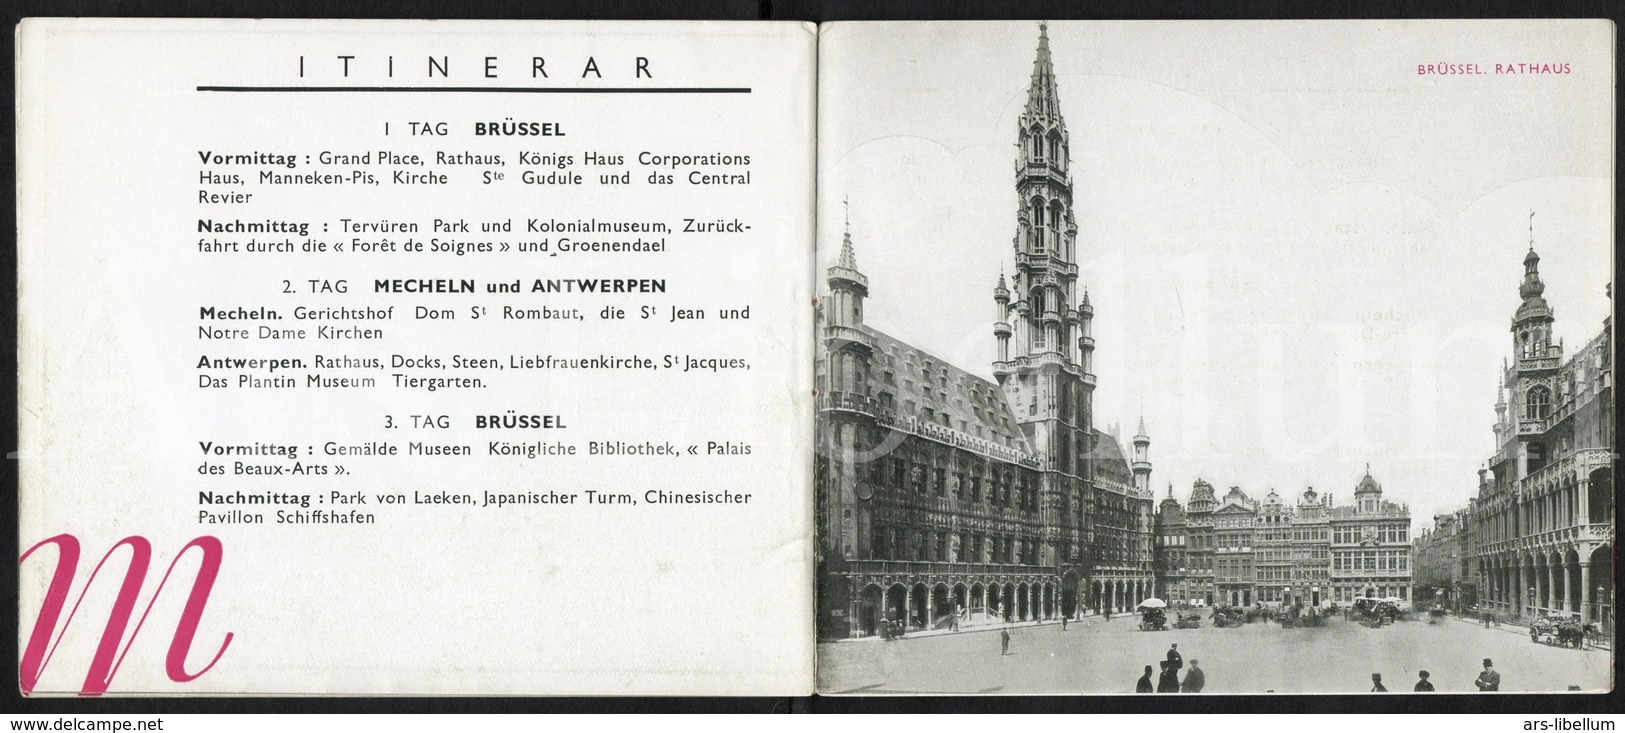 Hôtel Metropole / Bruxelles / brochure / met geographische kaart van Brussel / in het Duits / en allemand